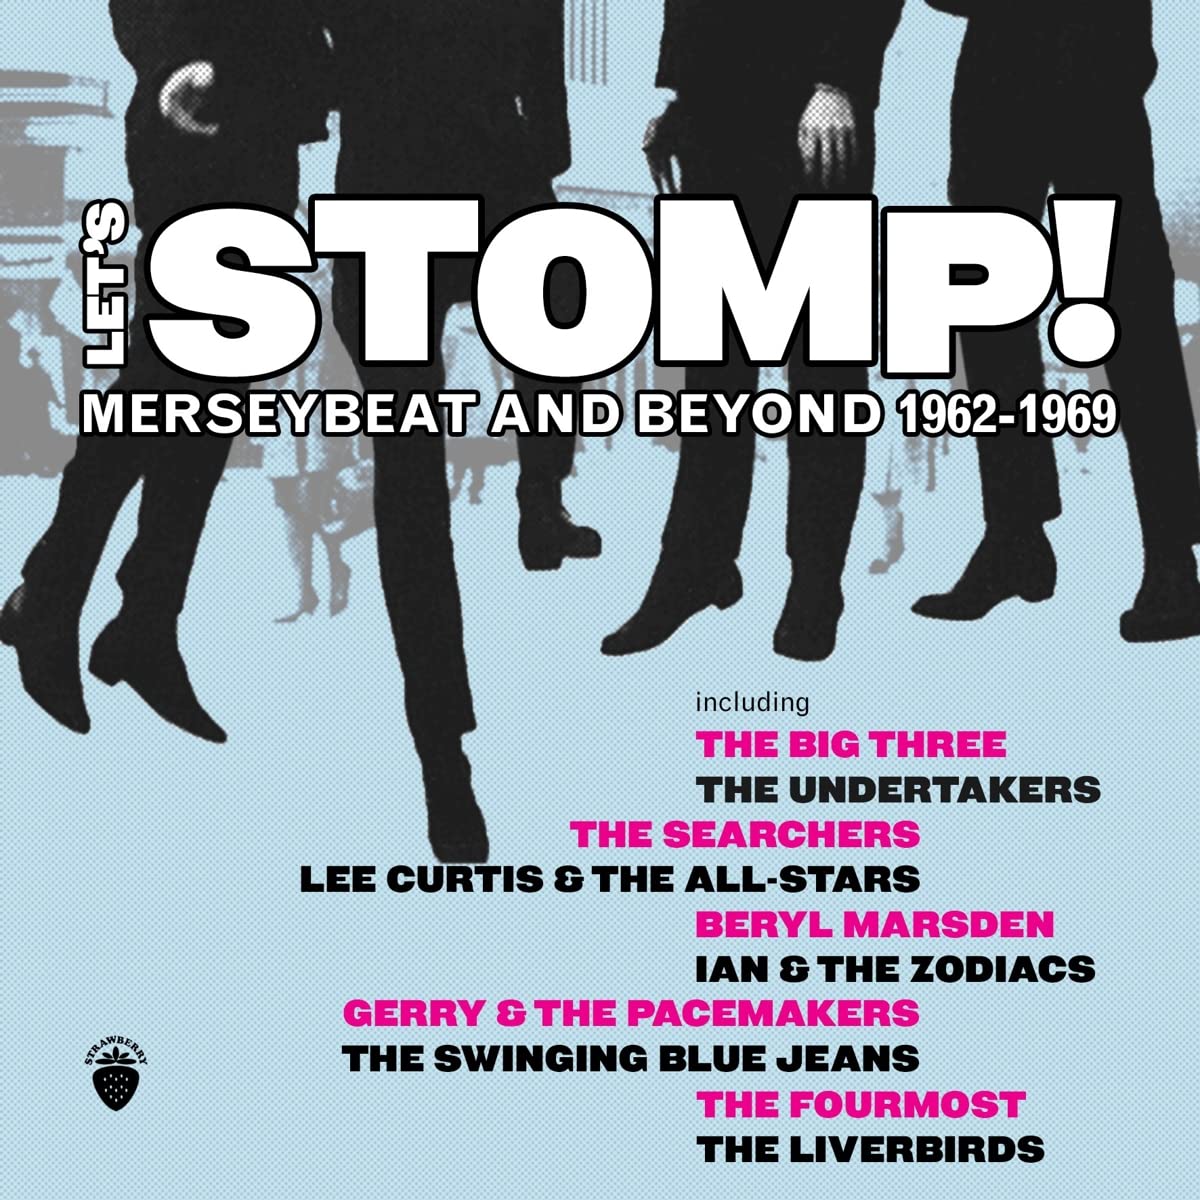 Audio Cd Let'S Stomp: Merseybeat & Beyond 1962-1969 / Various NUOVO SIGILLATO, EDIZIONE DEL 06/01/2023 SUBITO DISPONIBILE